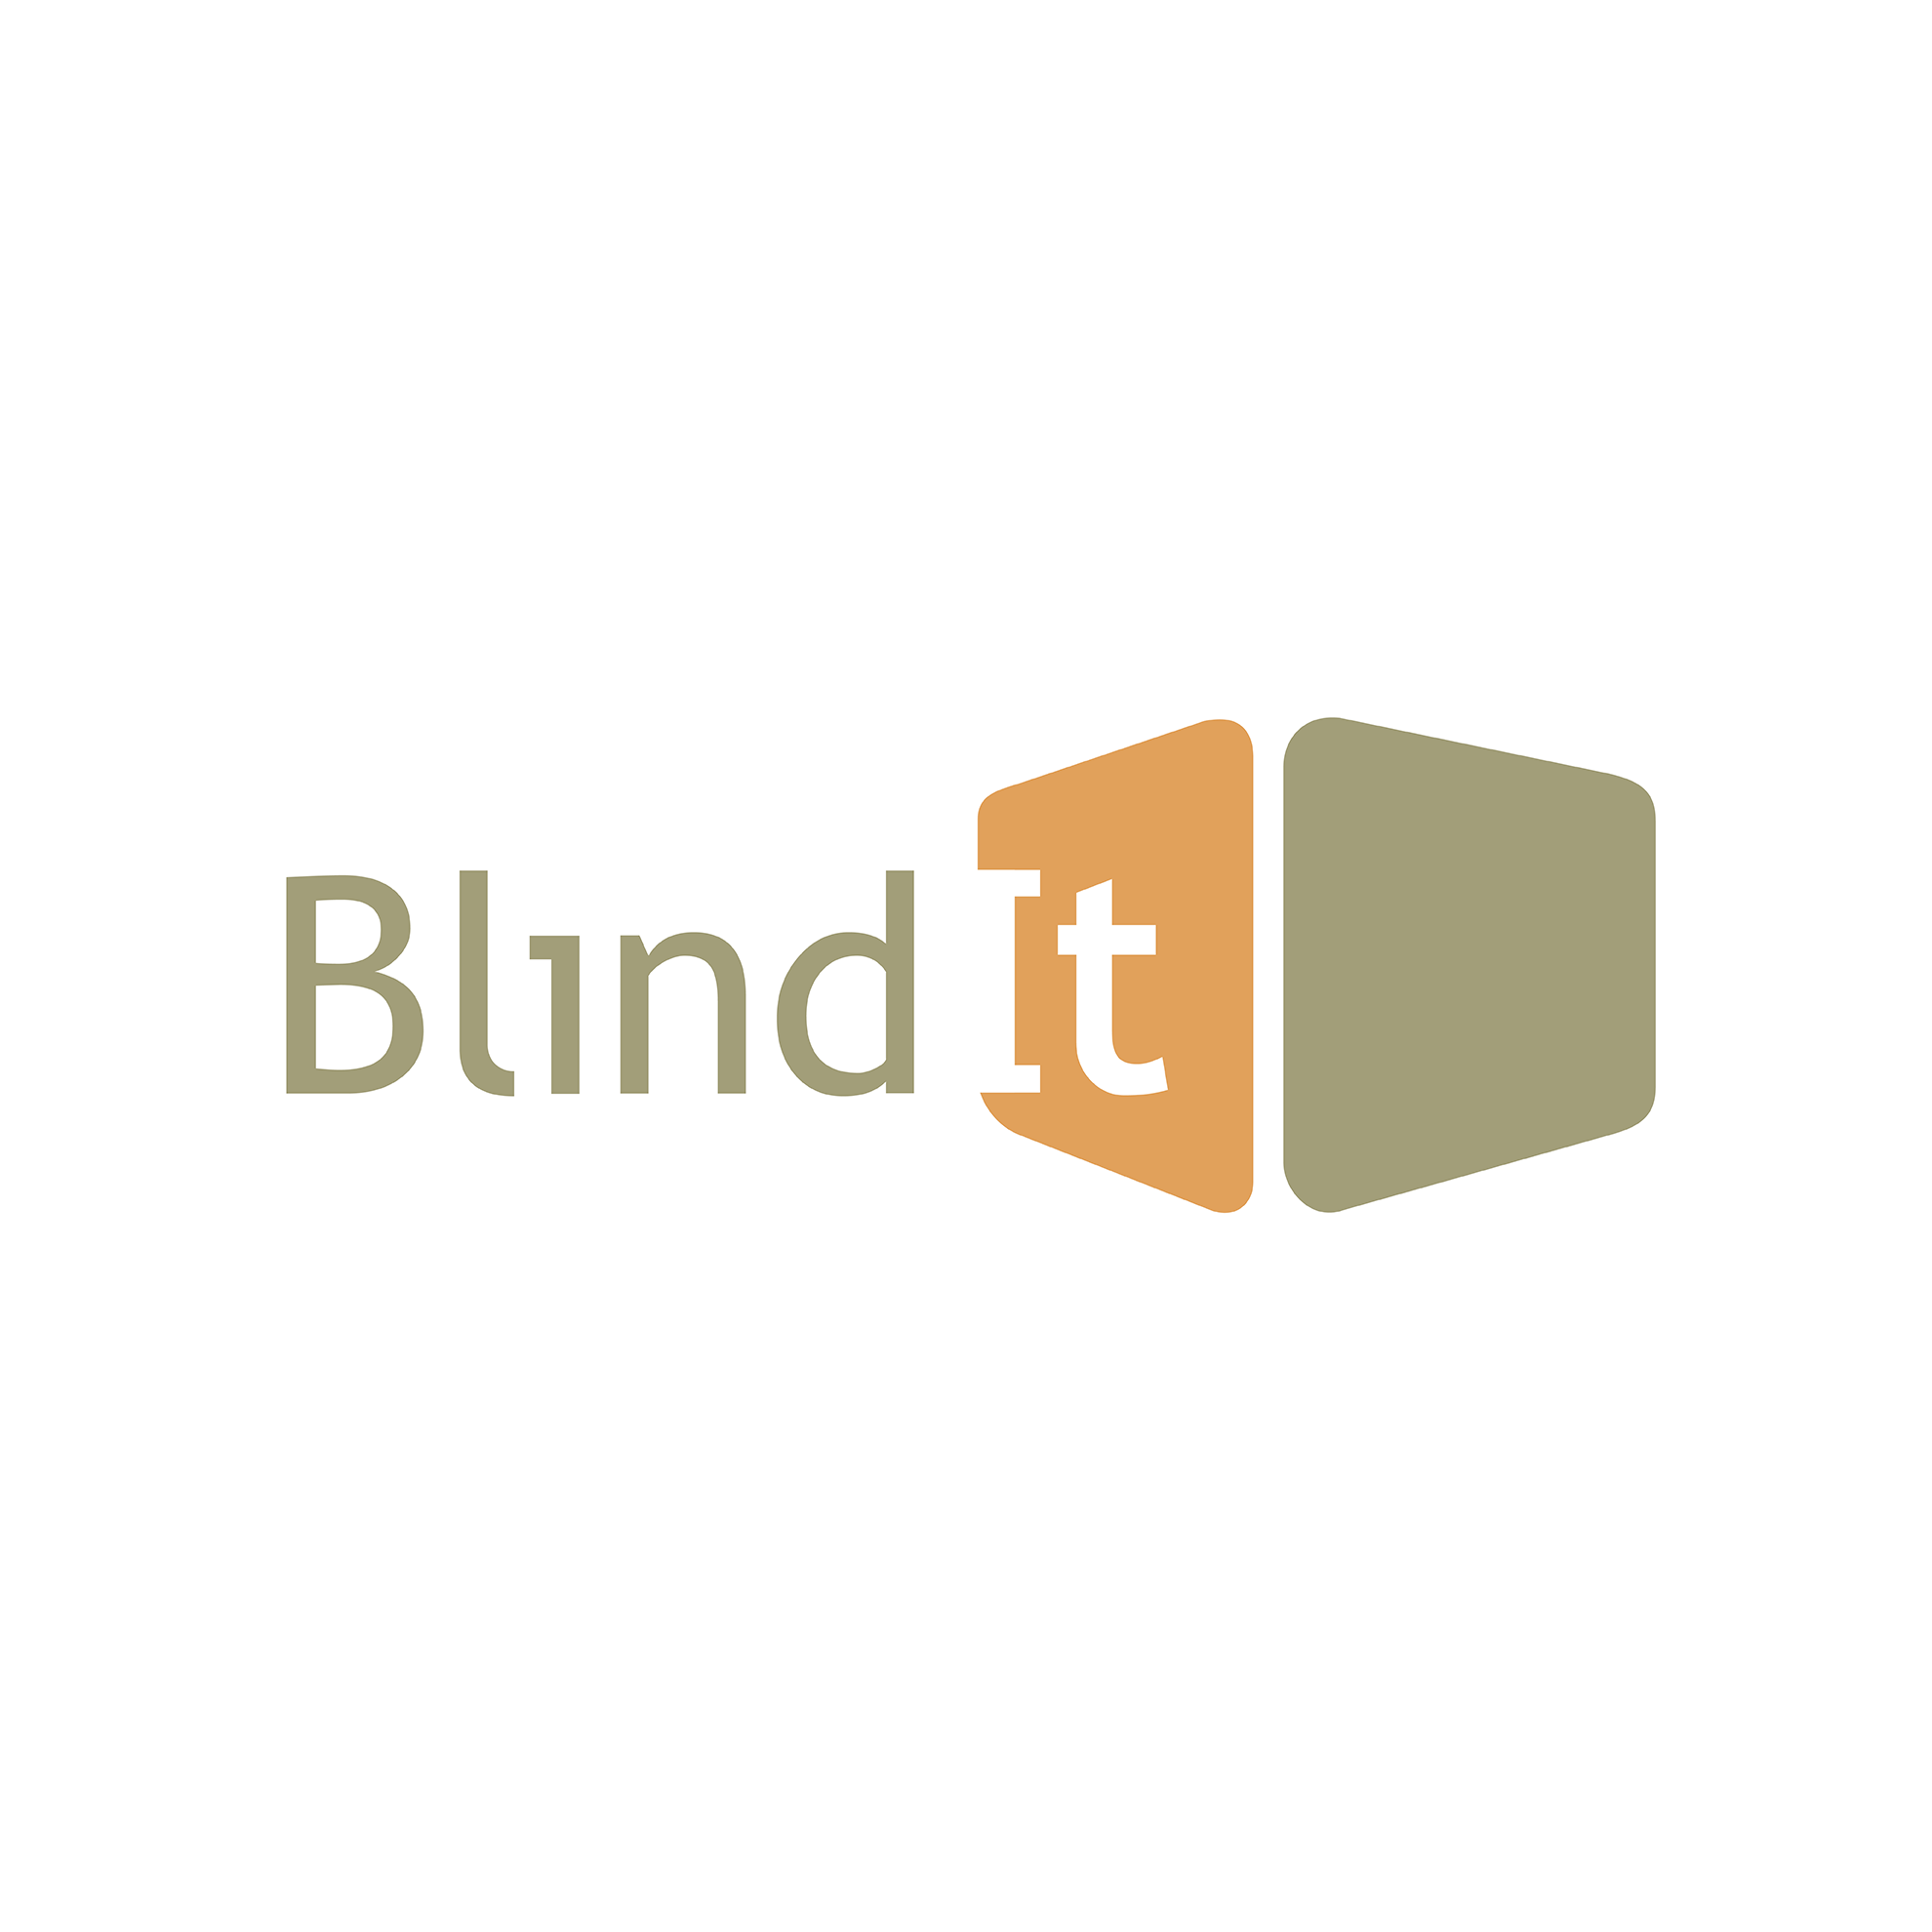 Blind It logo